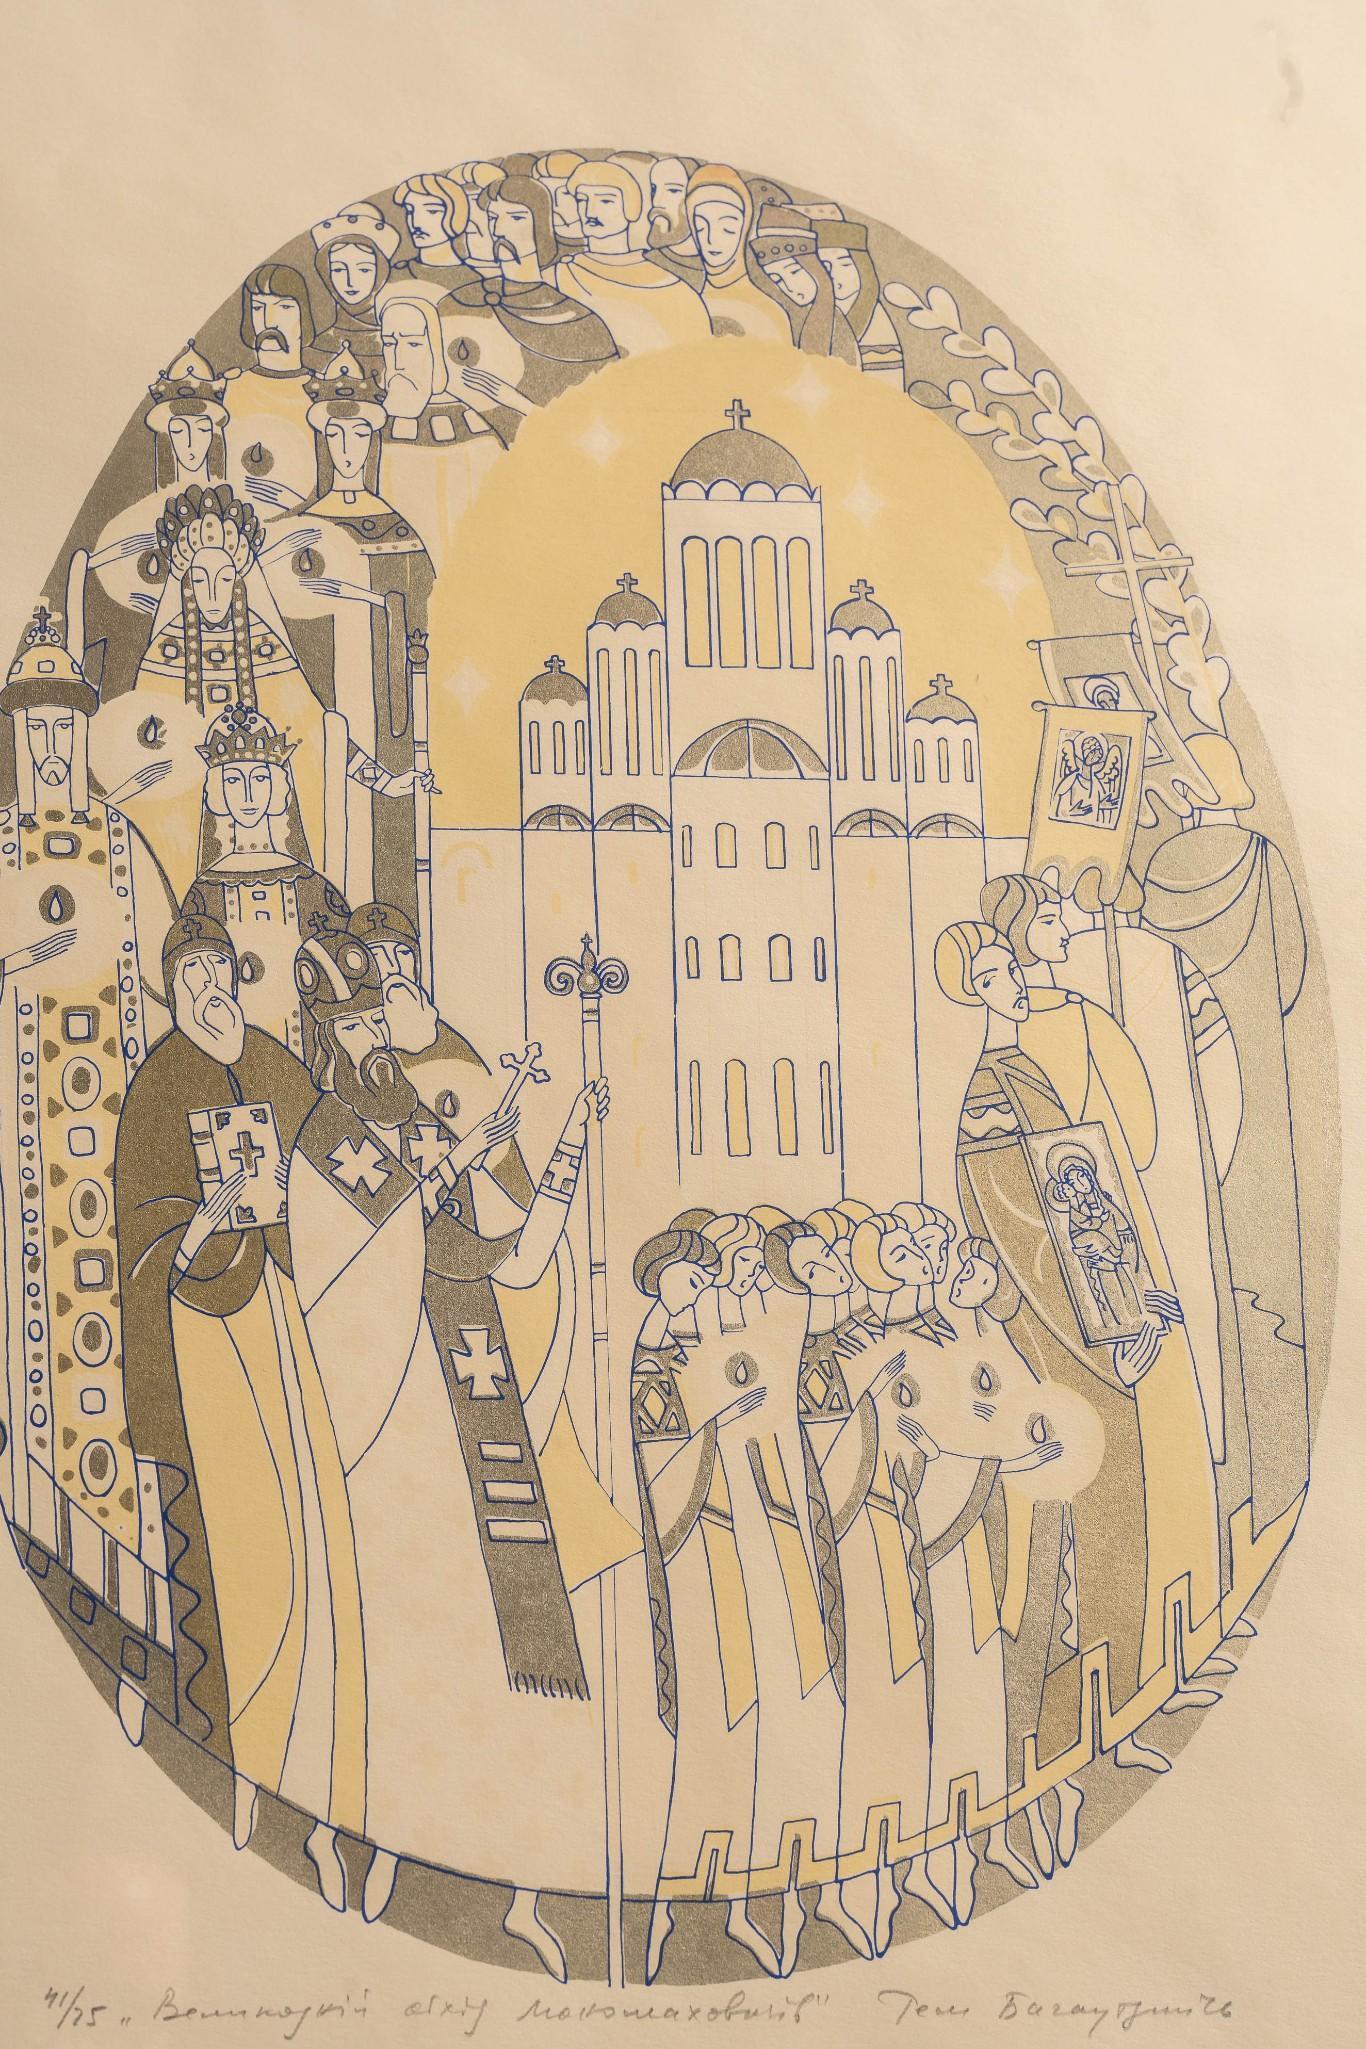 Ukrainian Easter Illustration, Framed Print, Signed and Numbered 41 of 75